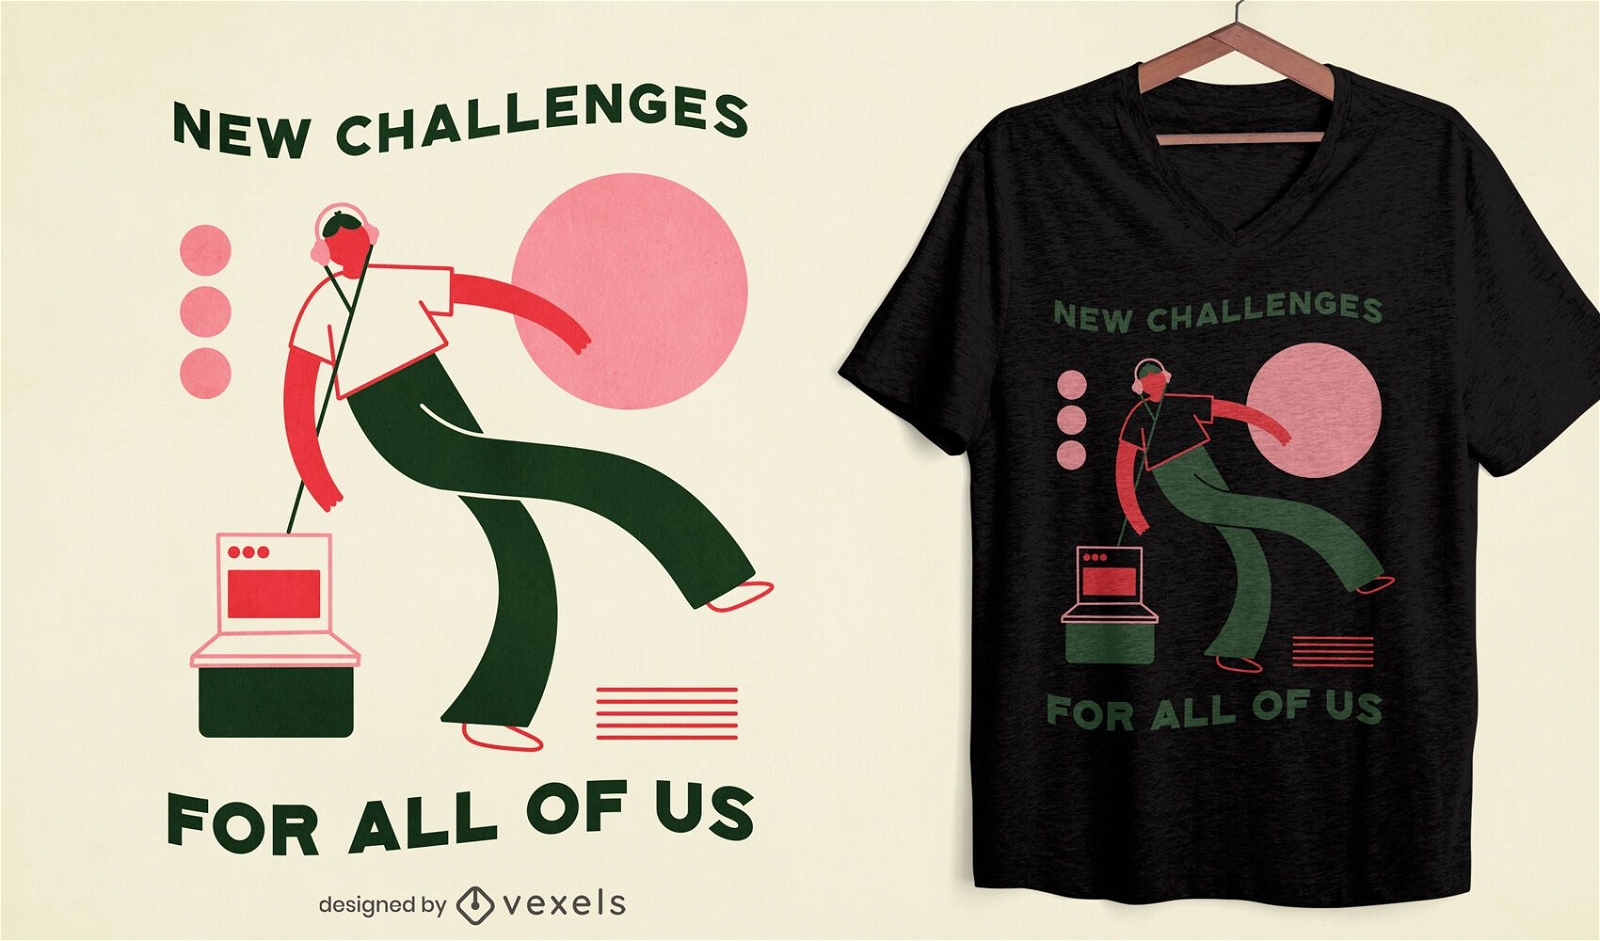 Novos desafios no design de camisetas